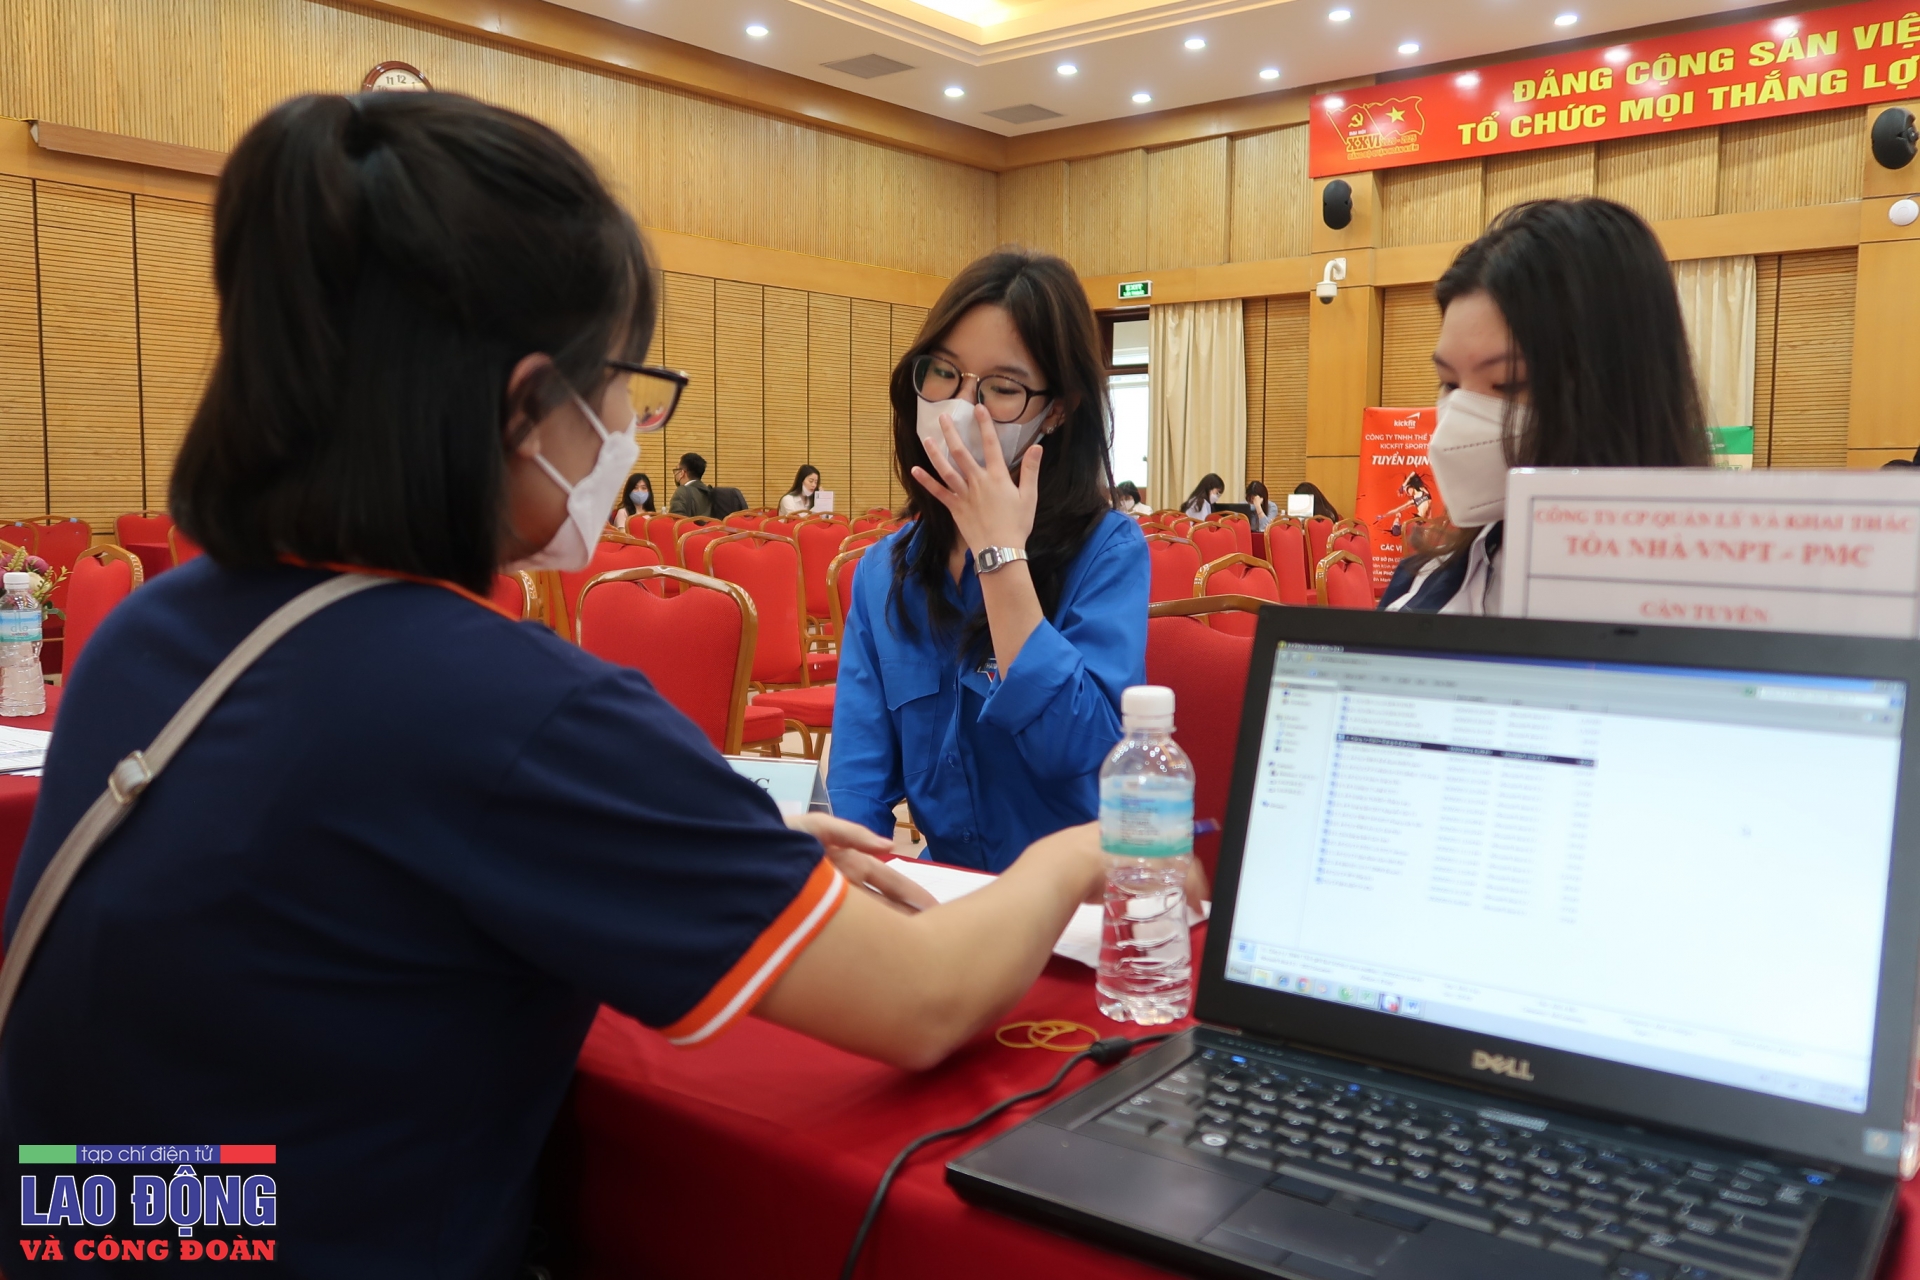 Hà Nội: Hơn 2.500 chỉ tiêu tuyển dụng tại Phiên giao dịch việc làm quận Hoàn Kiếm